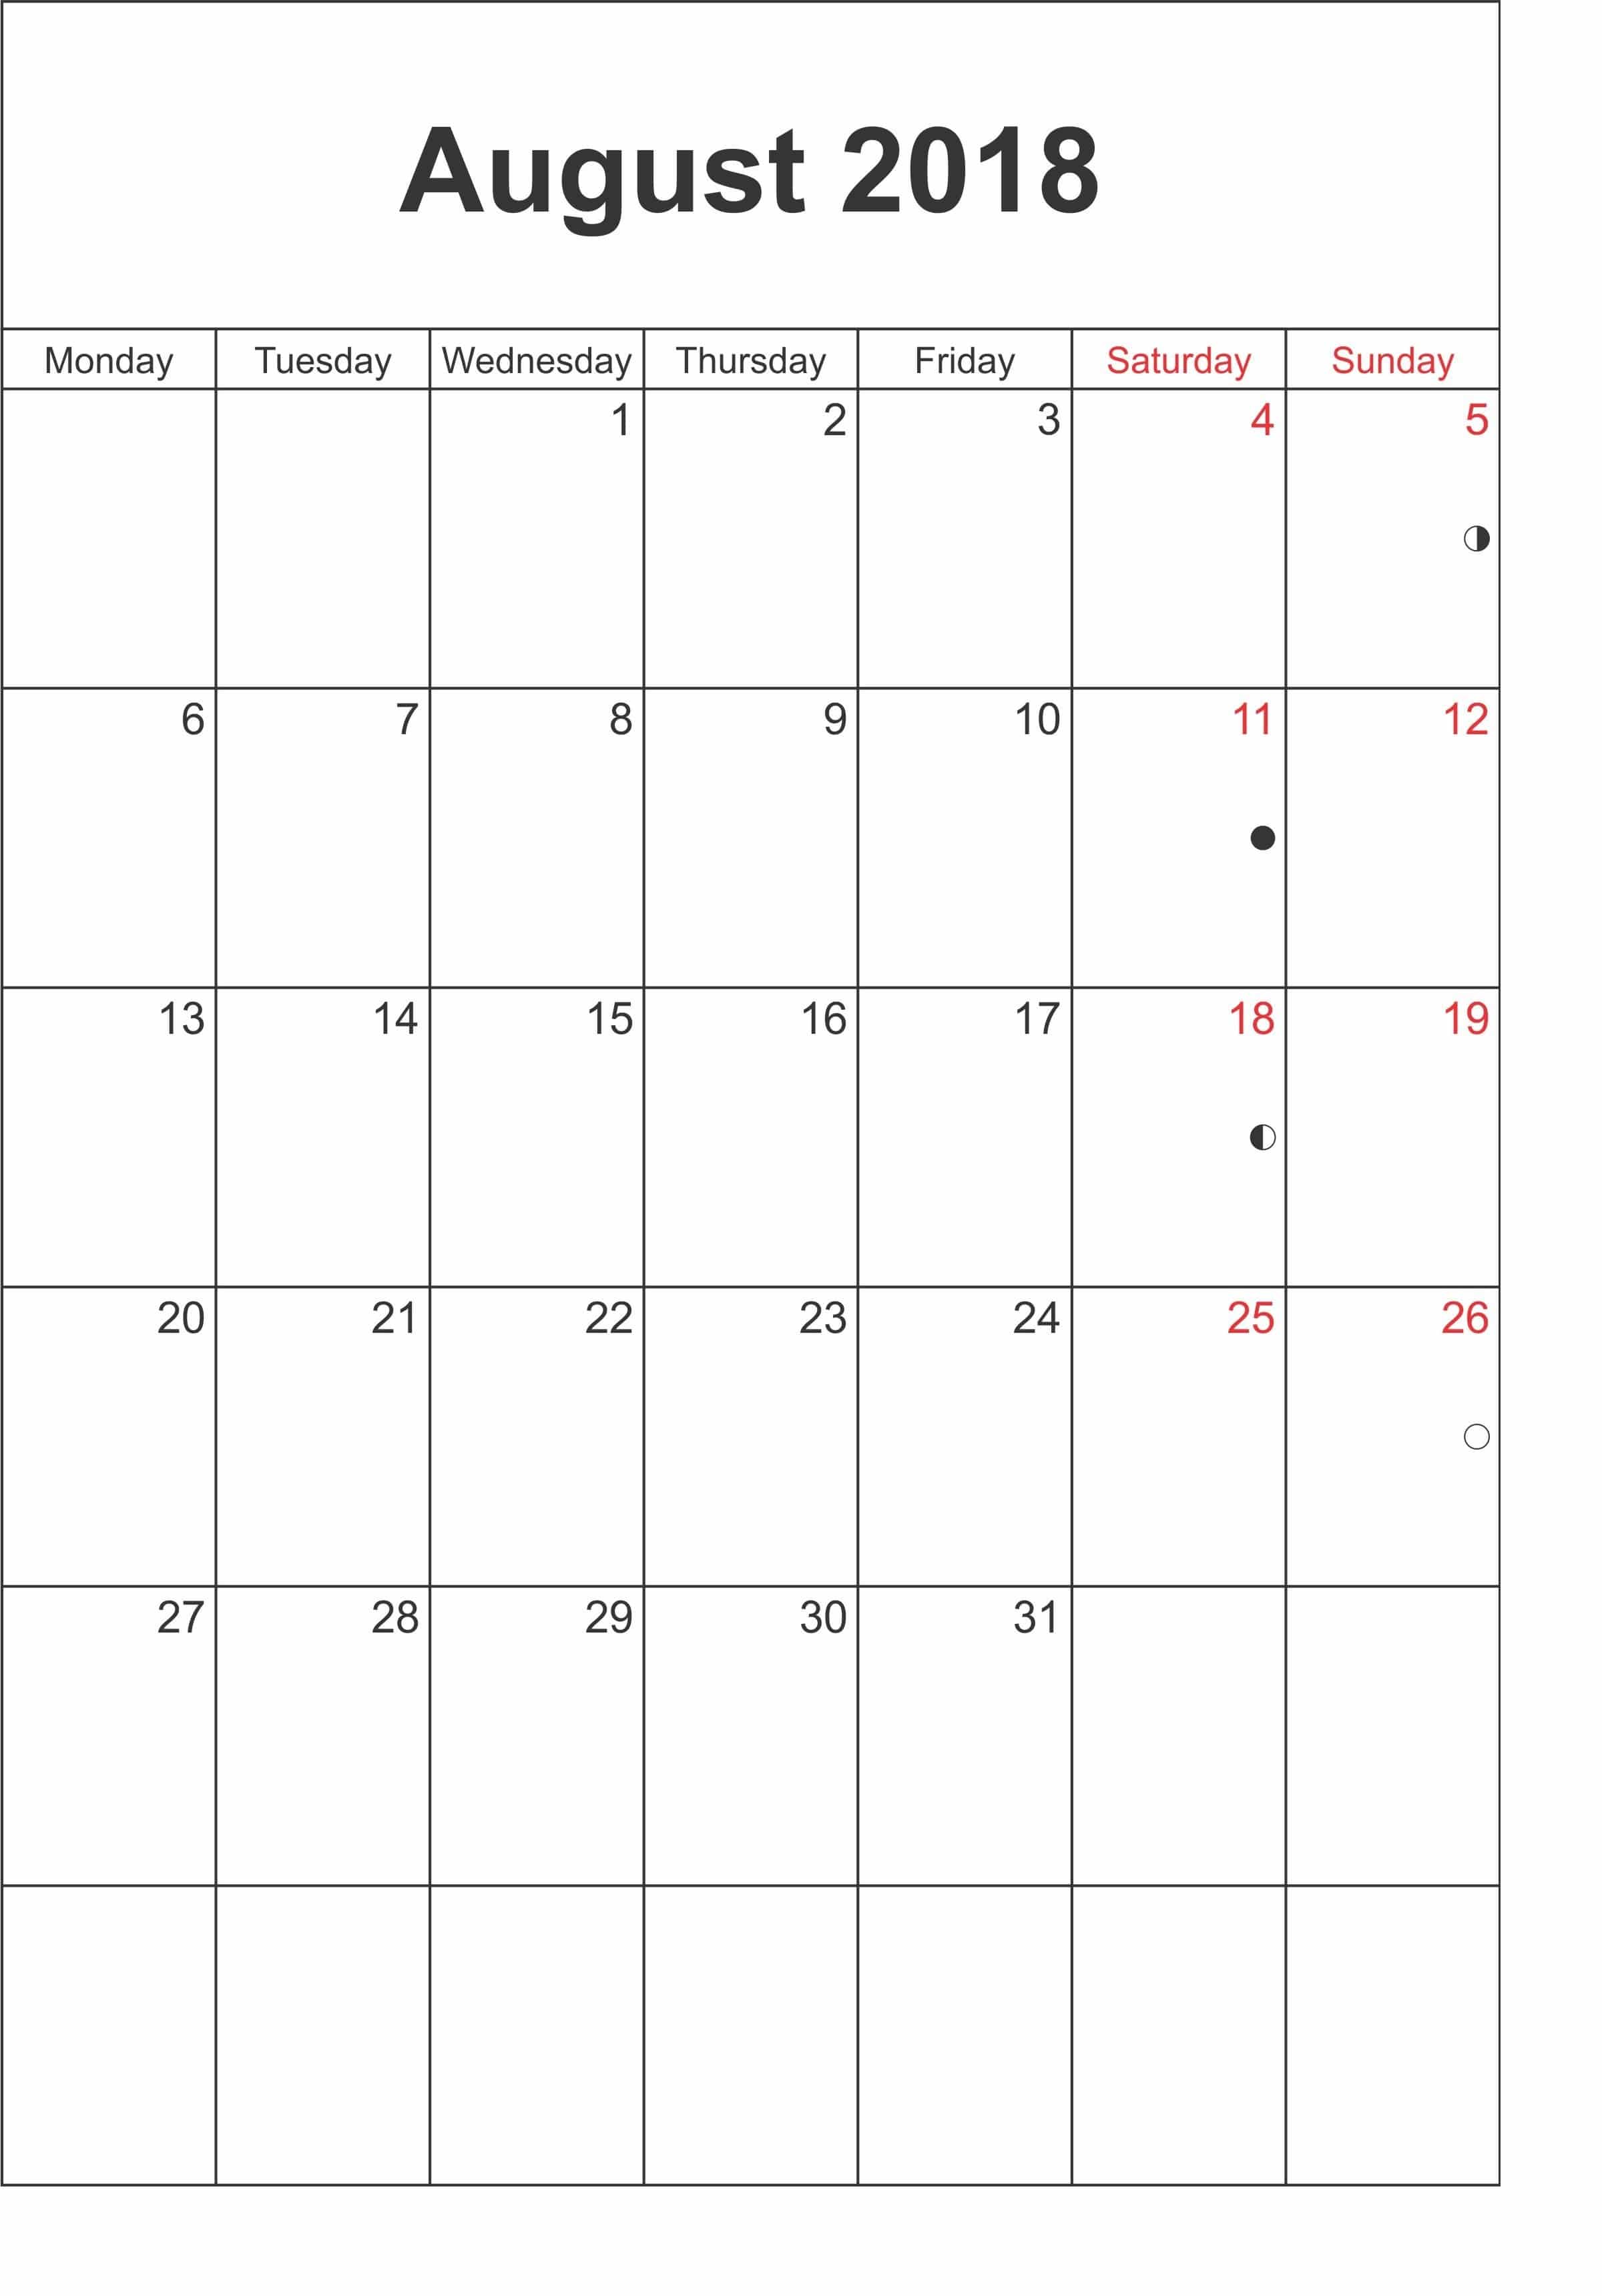 August 2018 Calendar Template